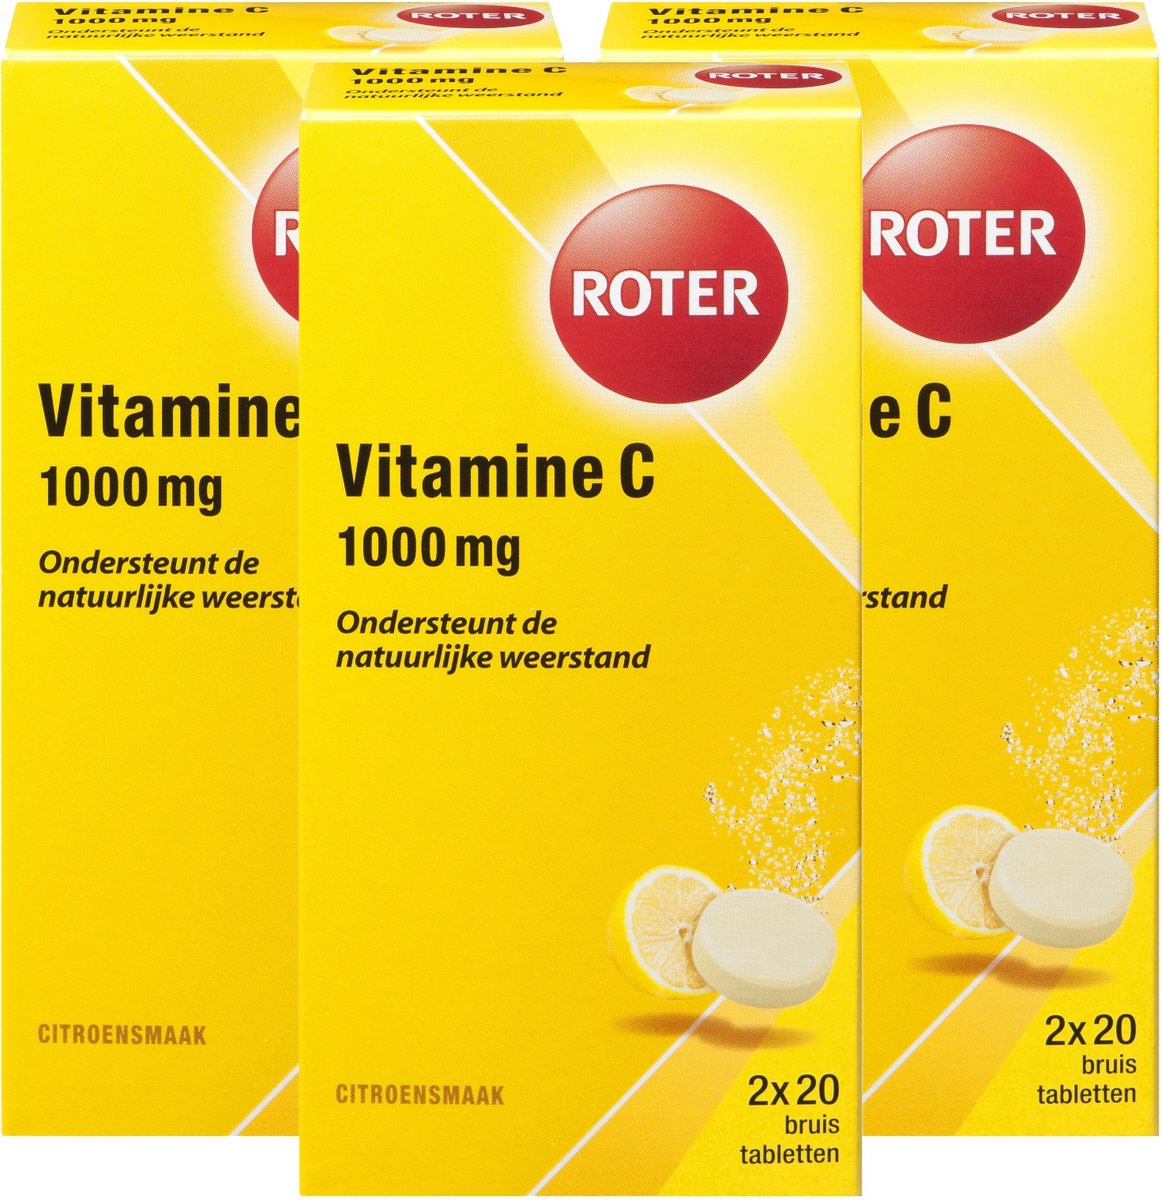 Roter Vitamine C 1000 mg - Vitaminen - Citroen - 120 bruistabletten Voordeelverpakking